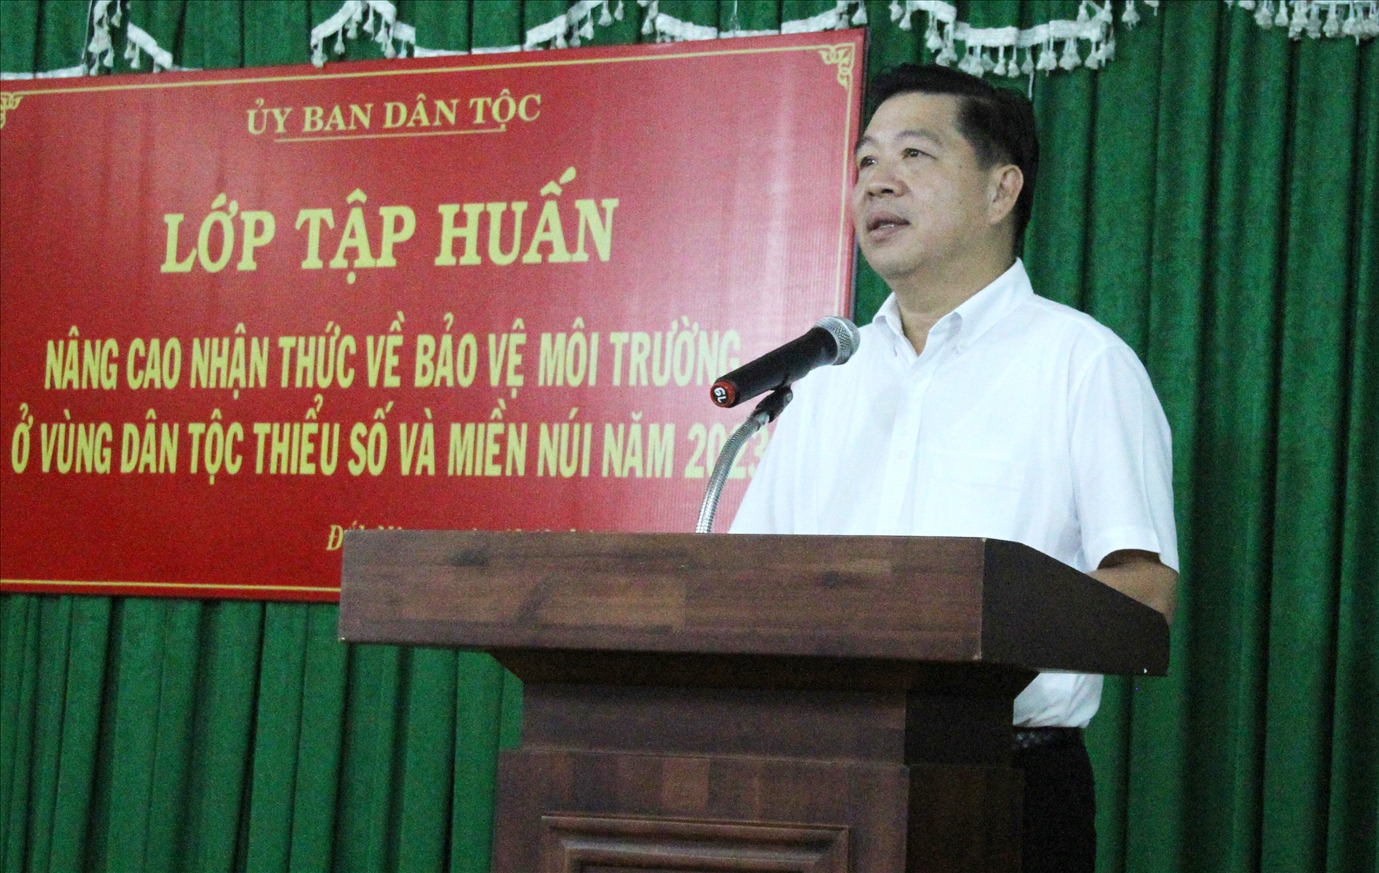 Thứ trưởng, Phó chủ nhiệm Ủy ban Dân tộc Lê Sơn Hài phát biểu khai mạc lớp tập huấn